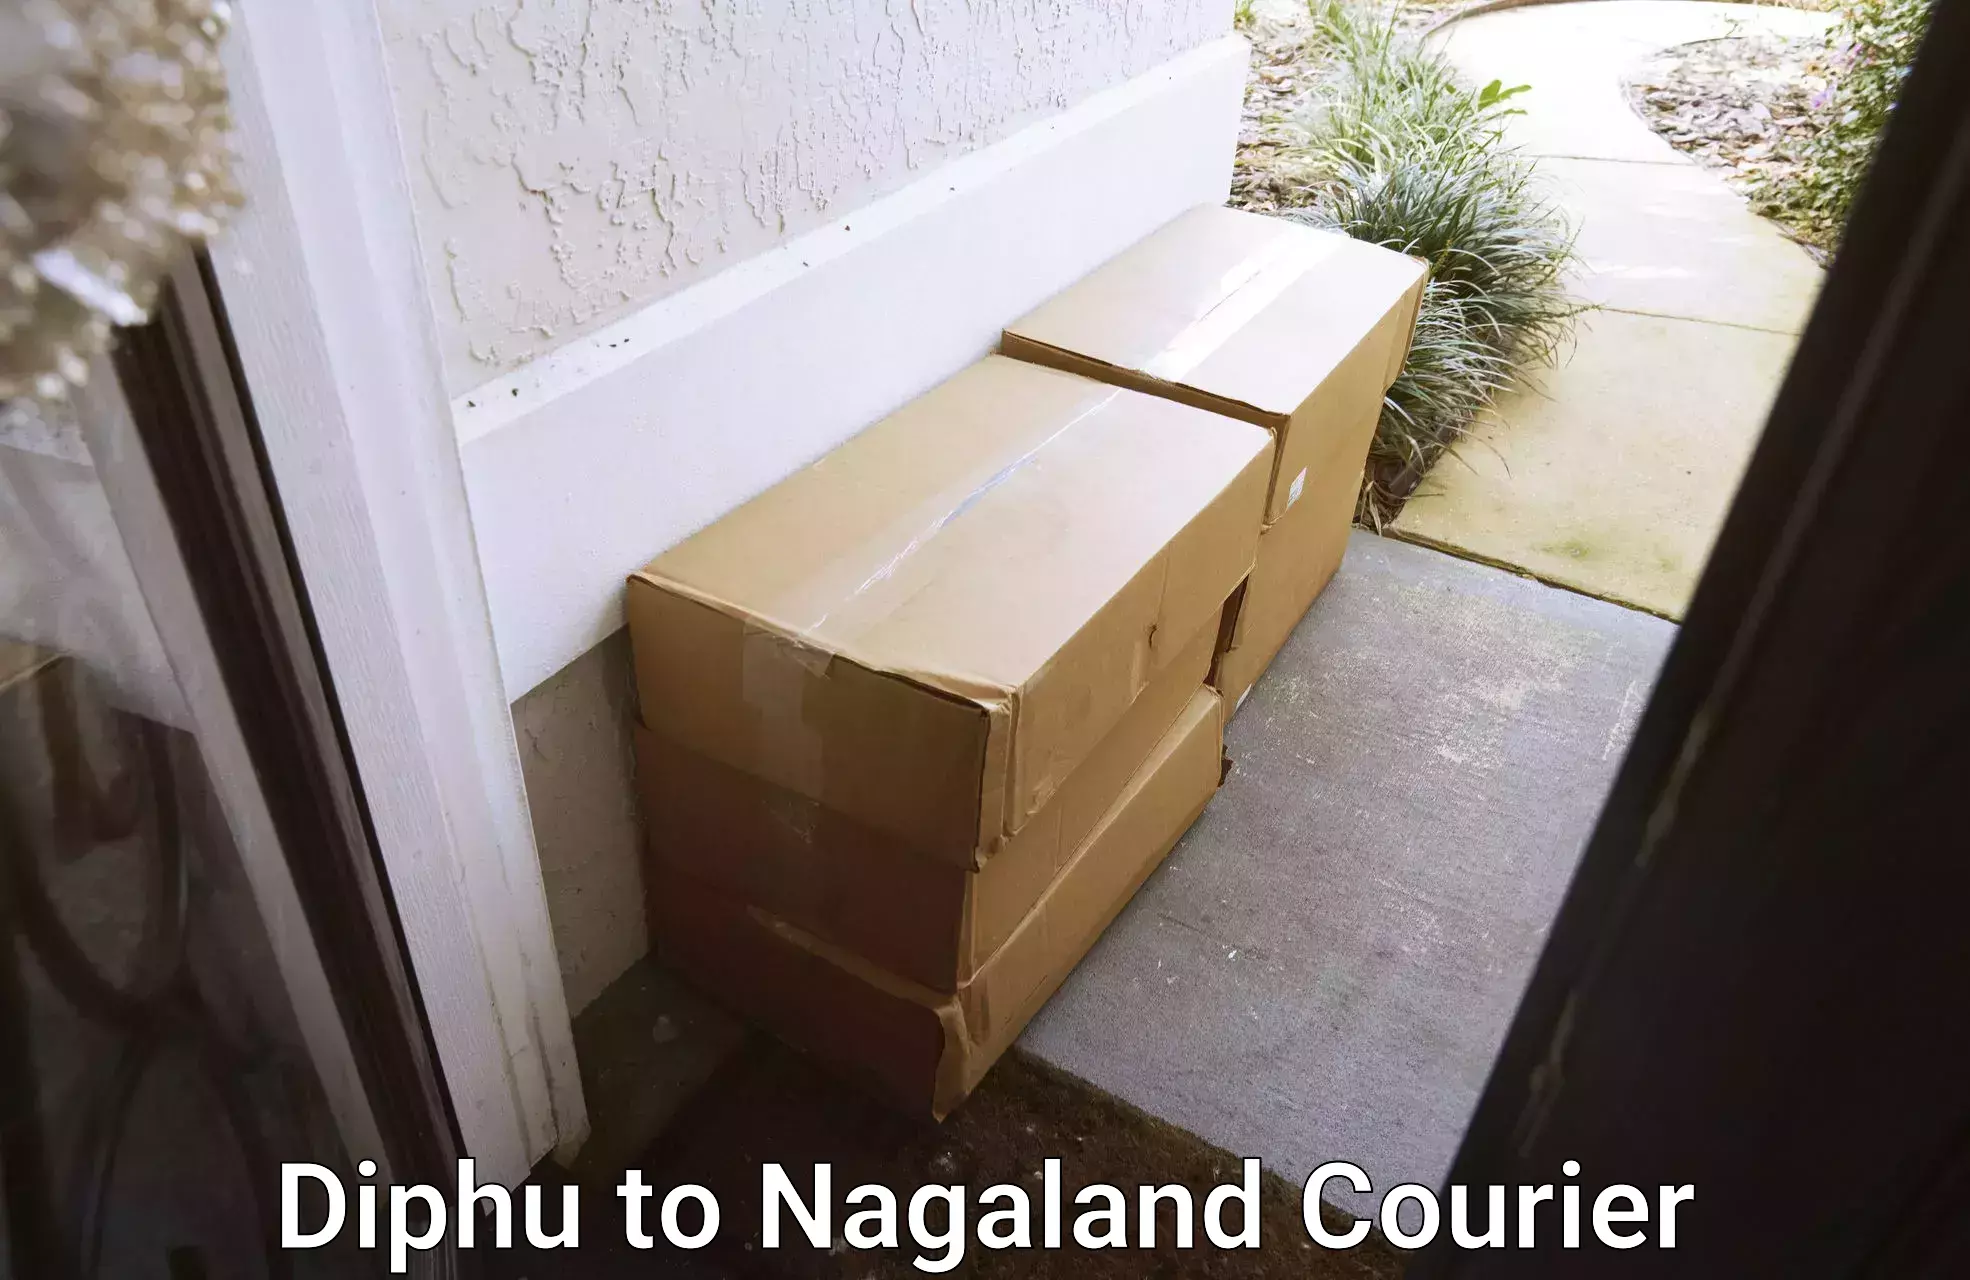 High-capacity shipping options Diphu to Nagaland